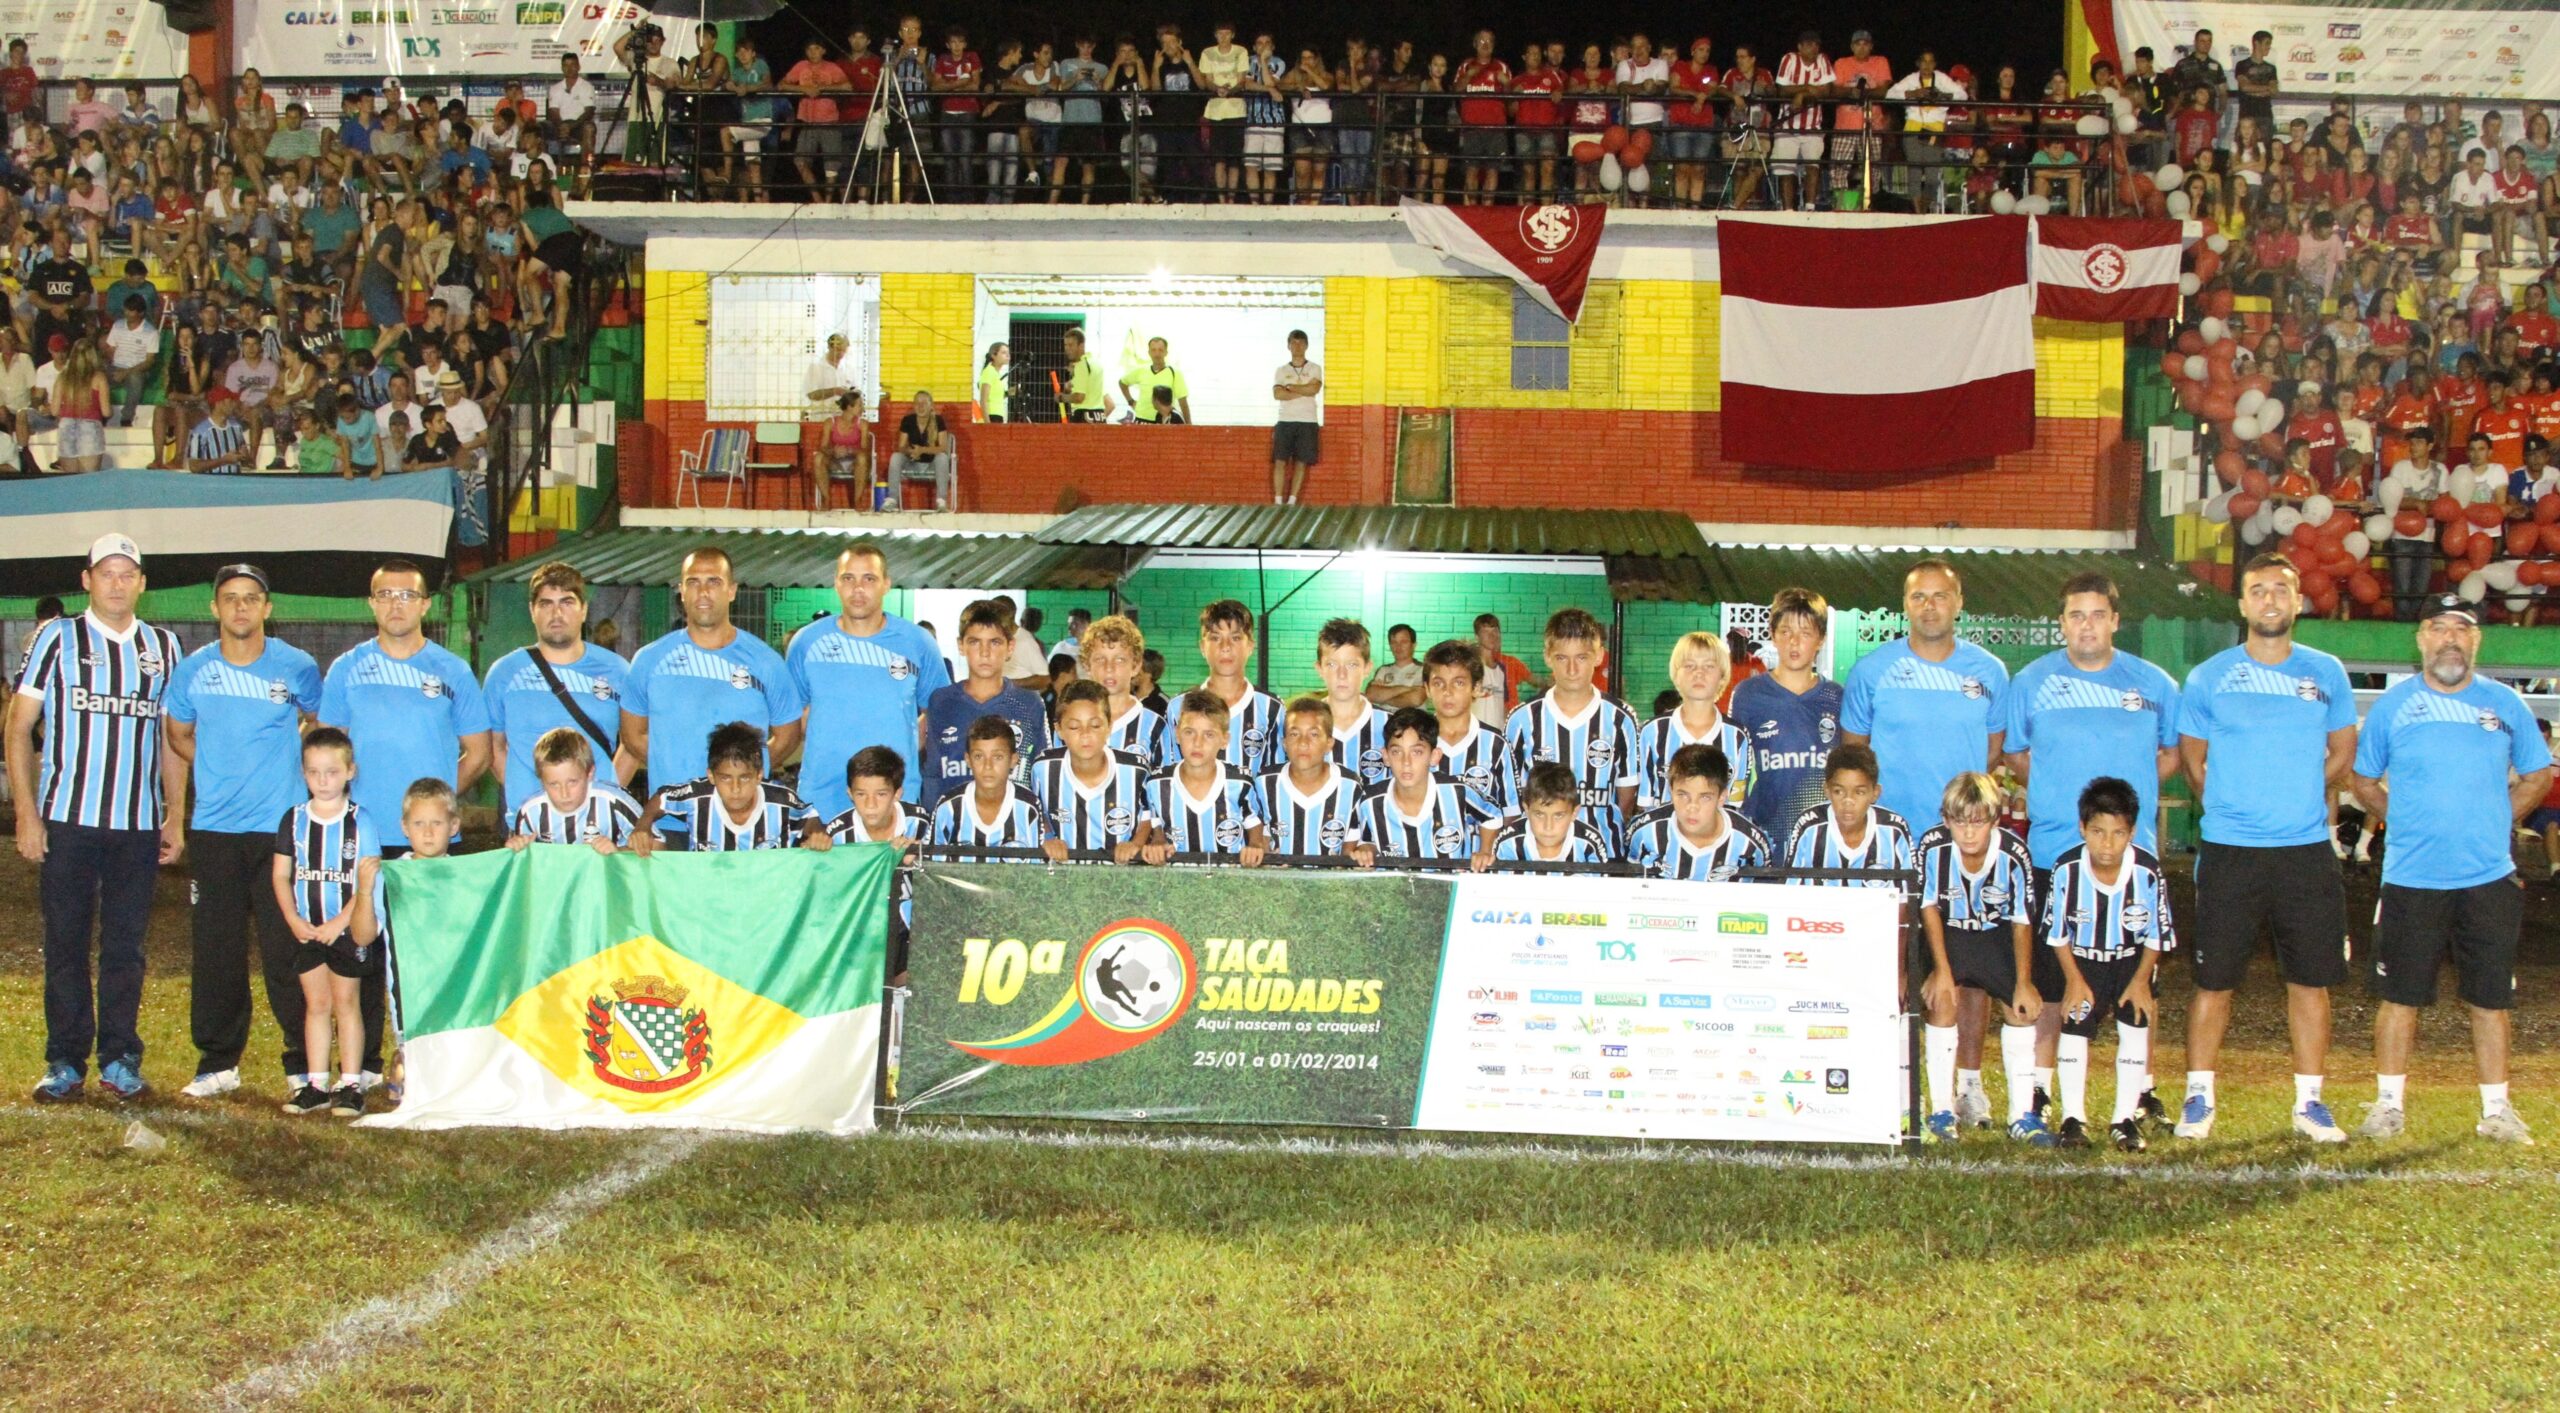 Equipe do Grêmio de Porto Alegre, Grande campeão da categoria Sub-11